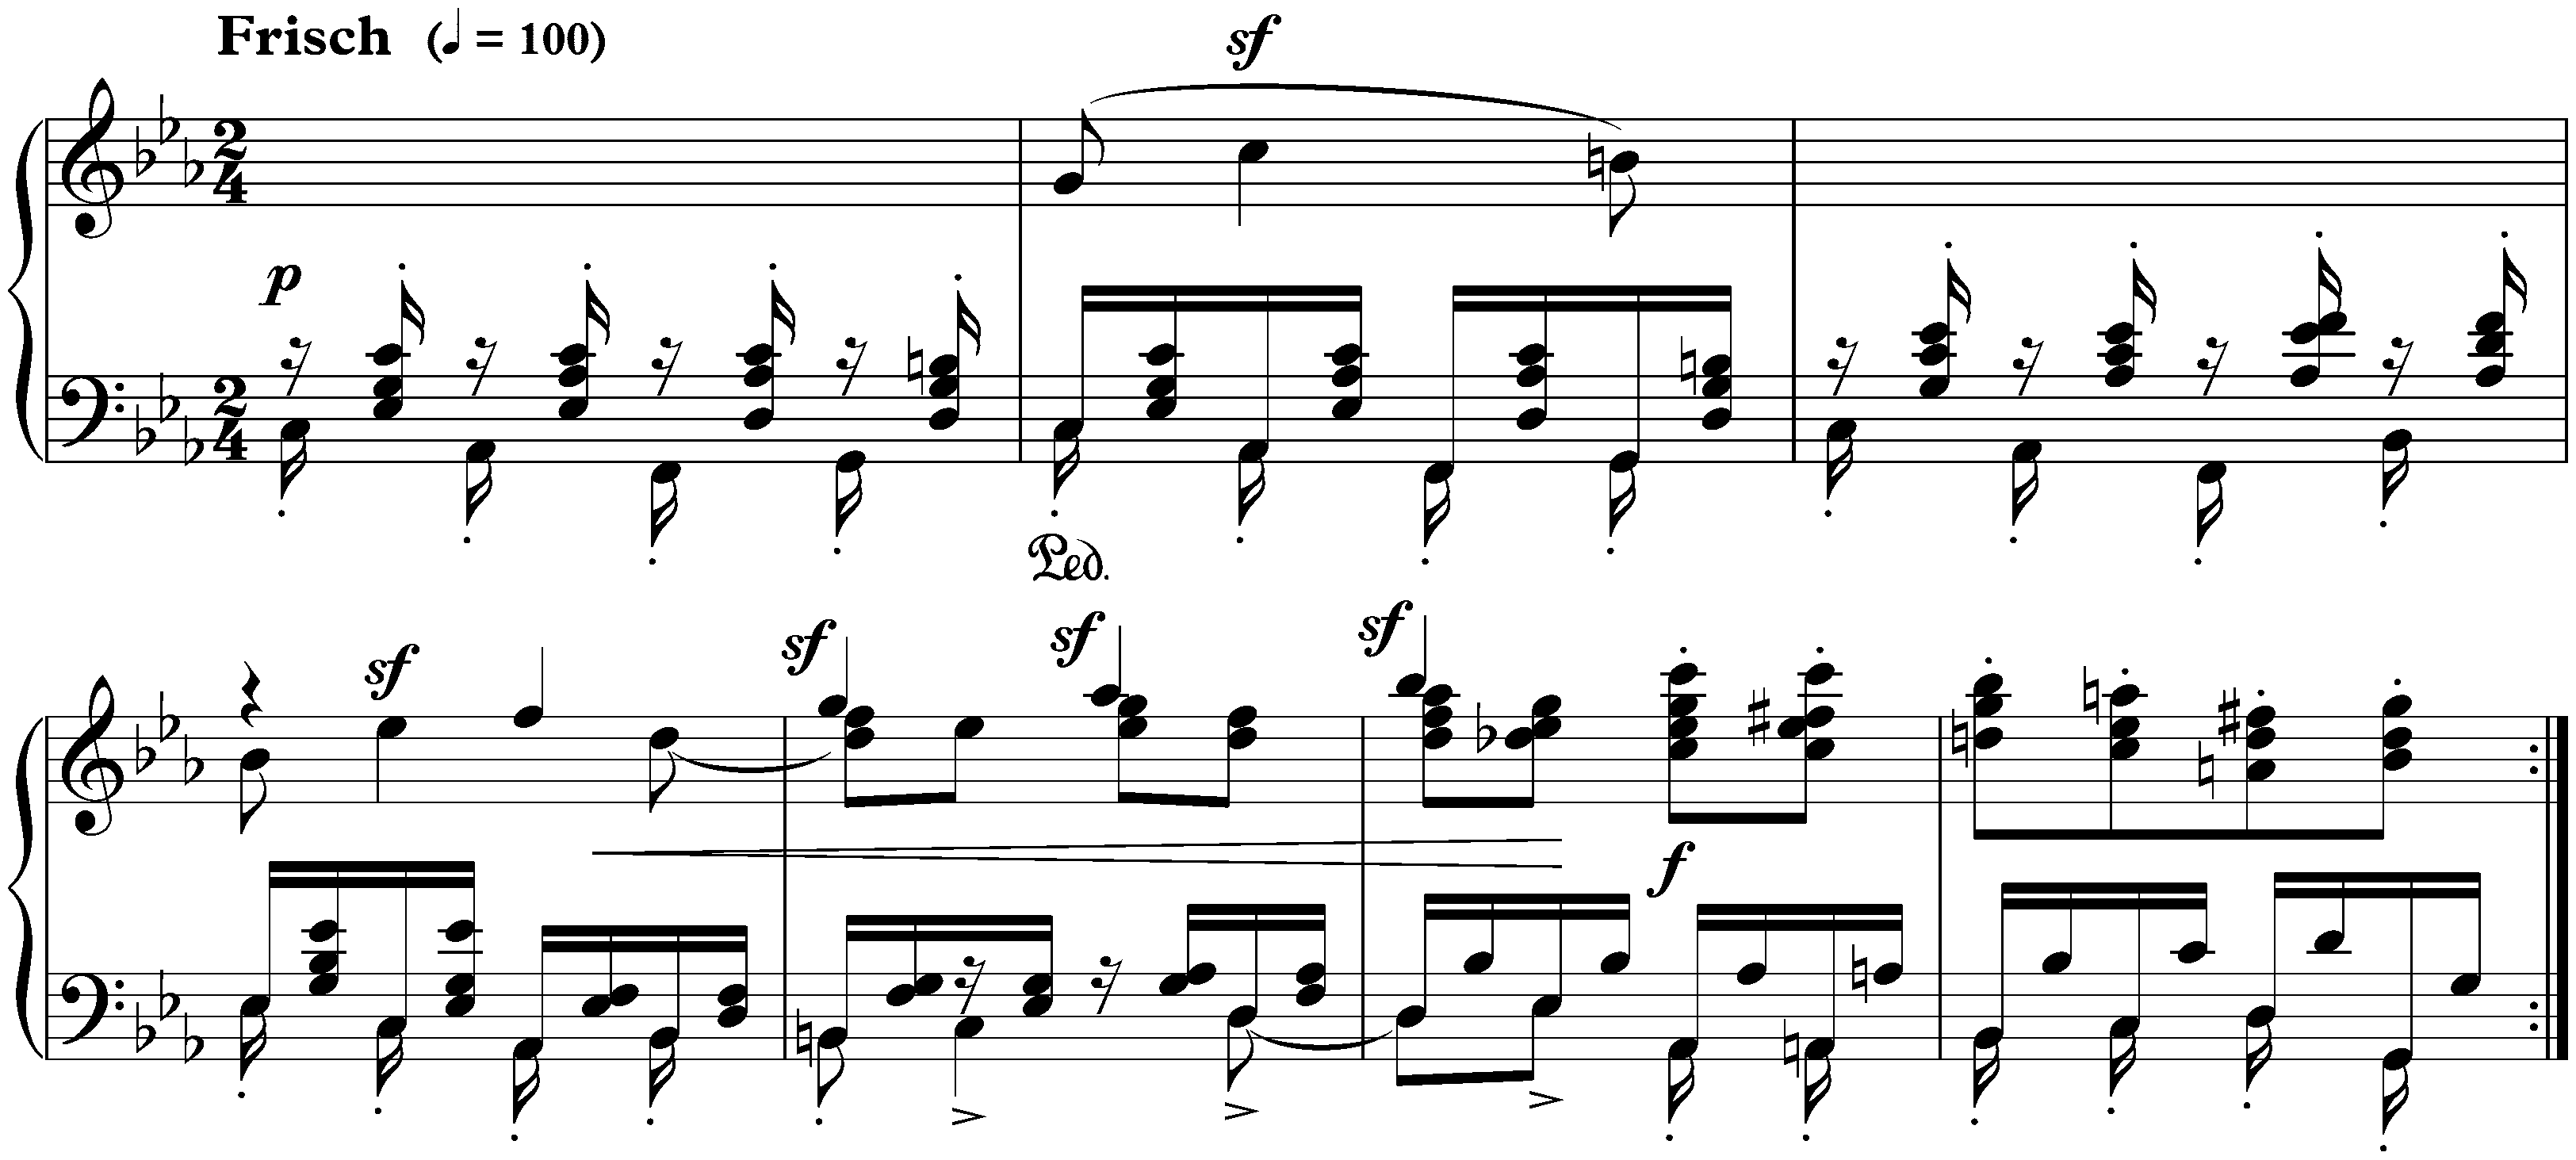 Davidsbündlertänze, op. 6; 8. Frisch